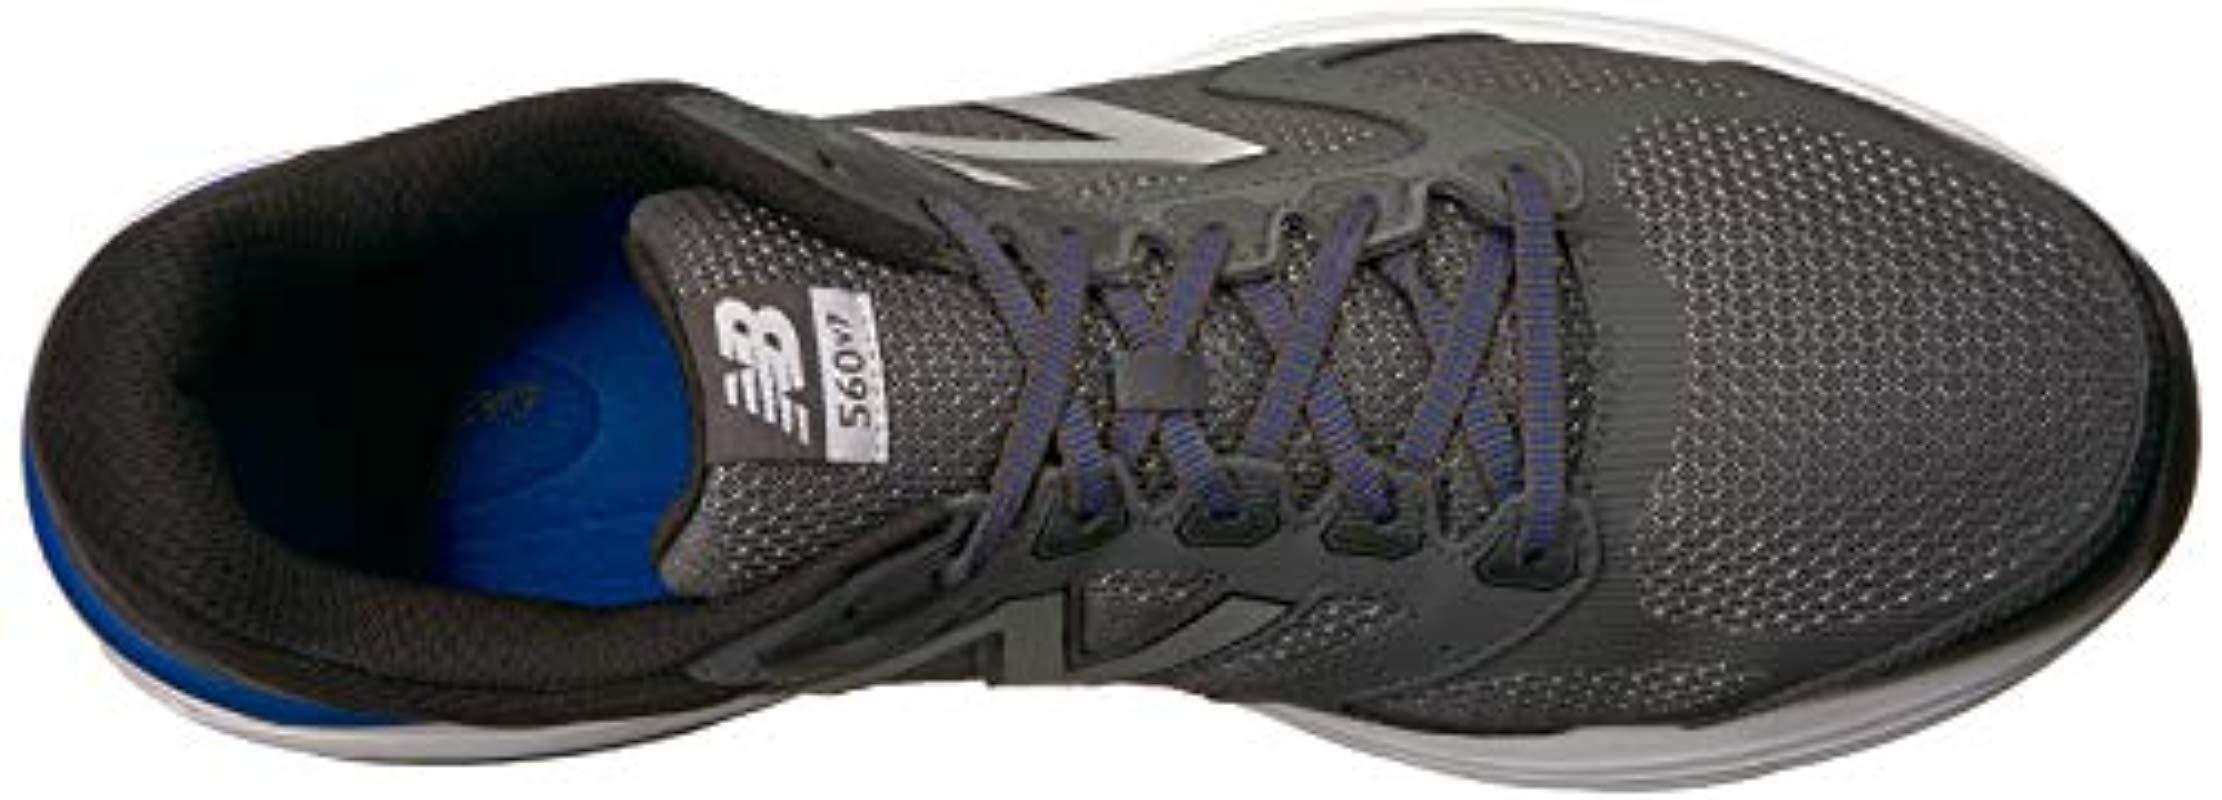 new balance men's m560v7 running shoe